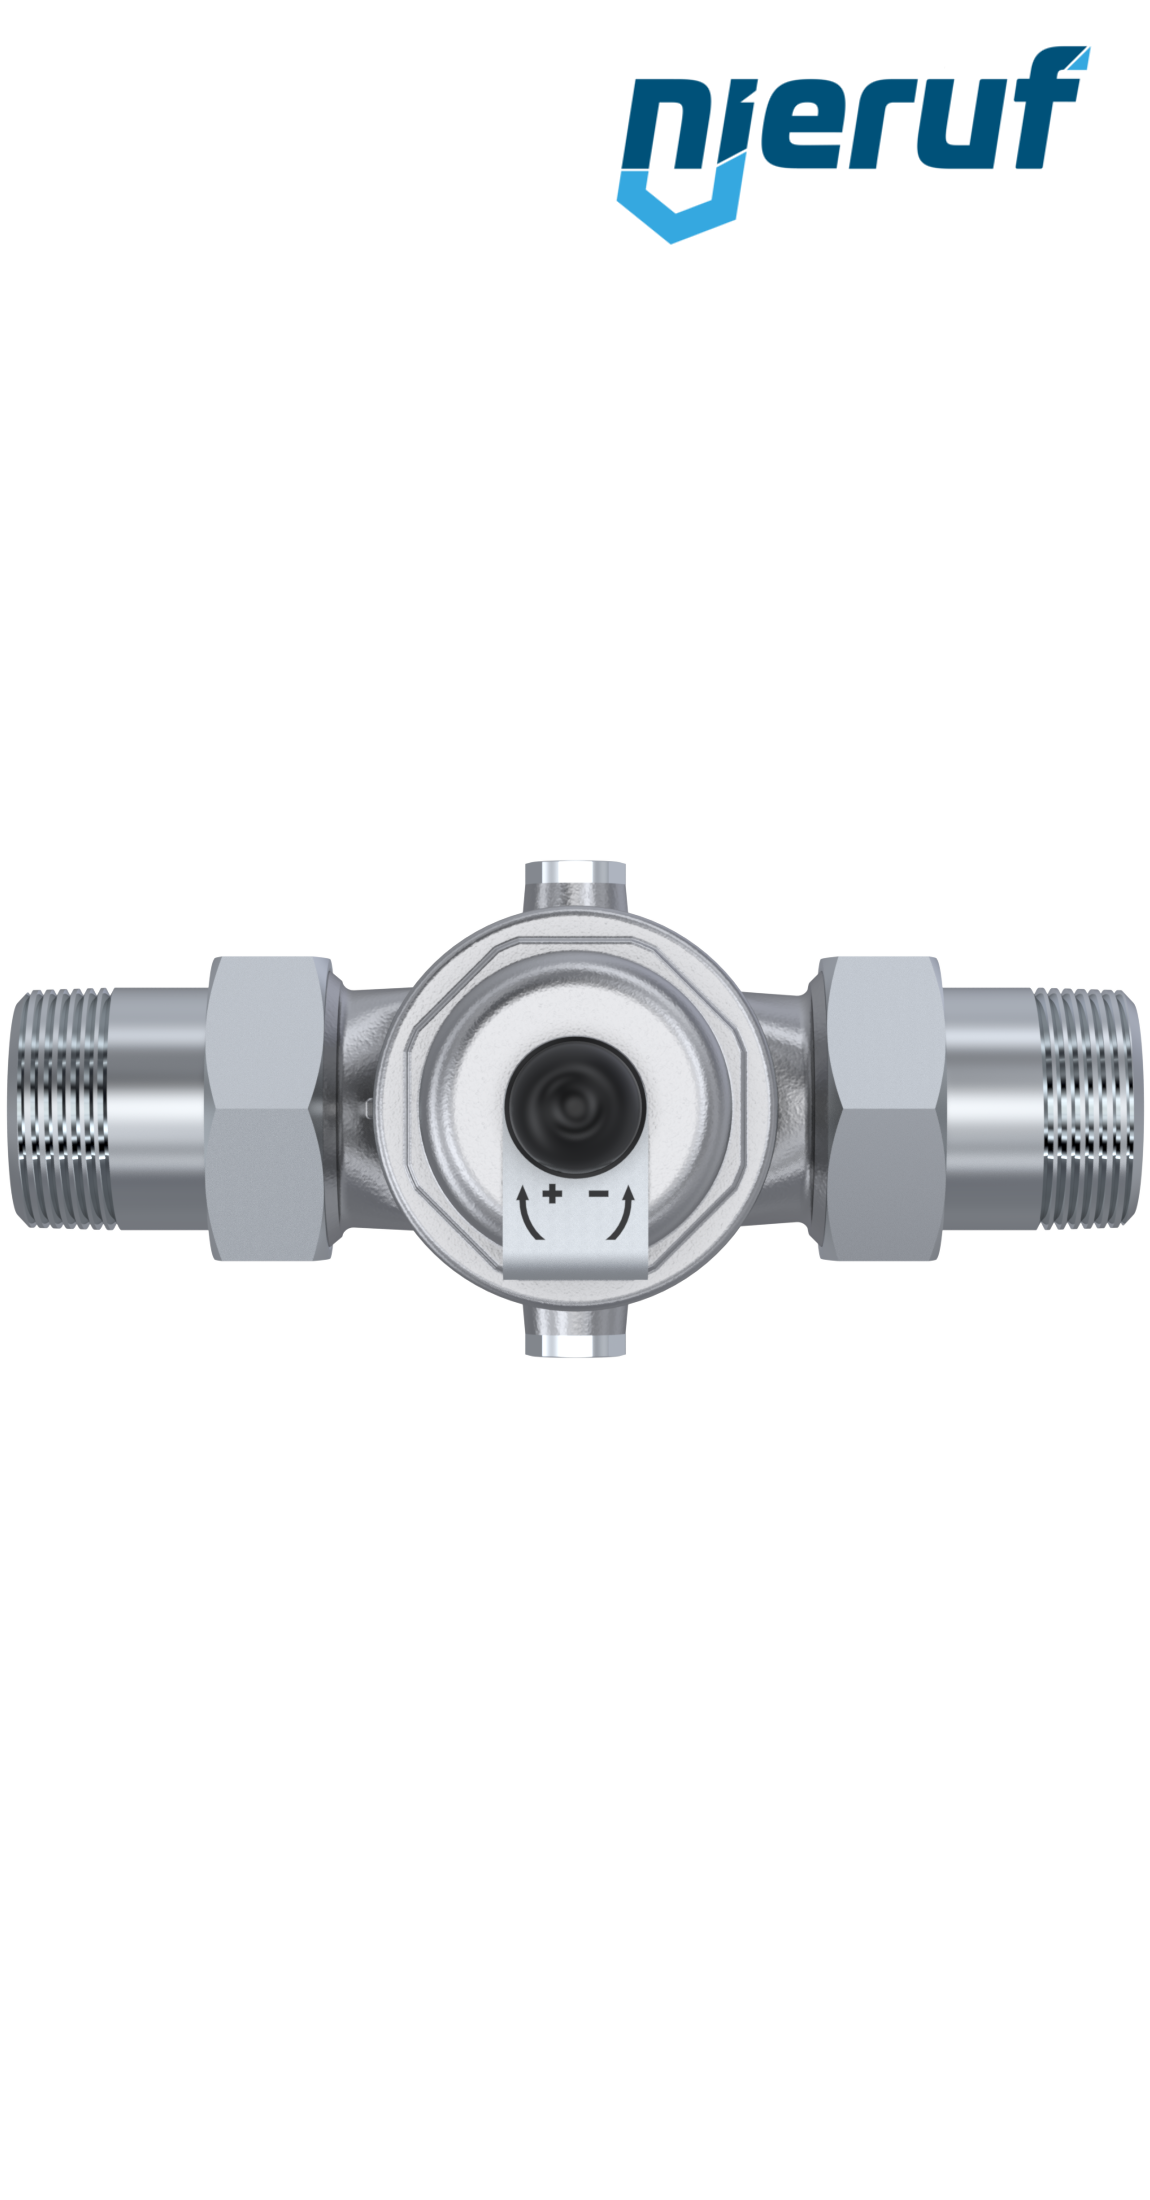 pressure reducing valve 1" inch male thread DM04 stainless steel FKM 0.5 - 2.0 bar